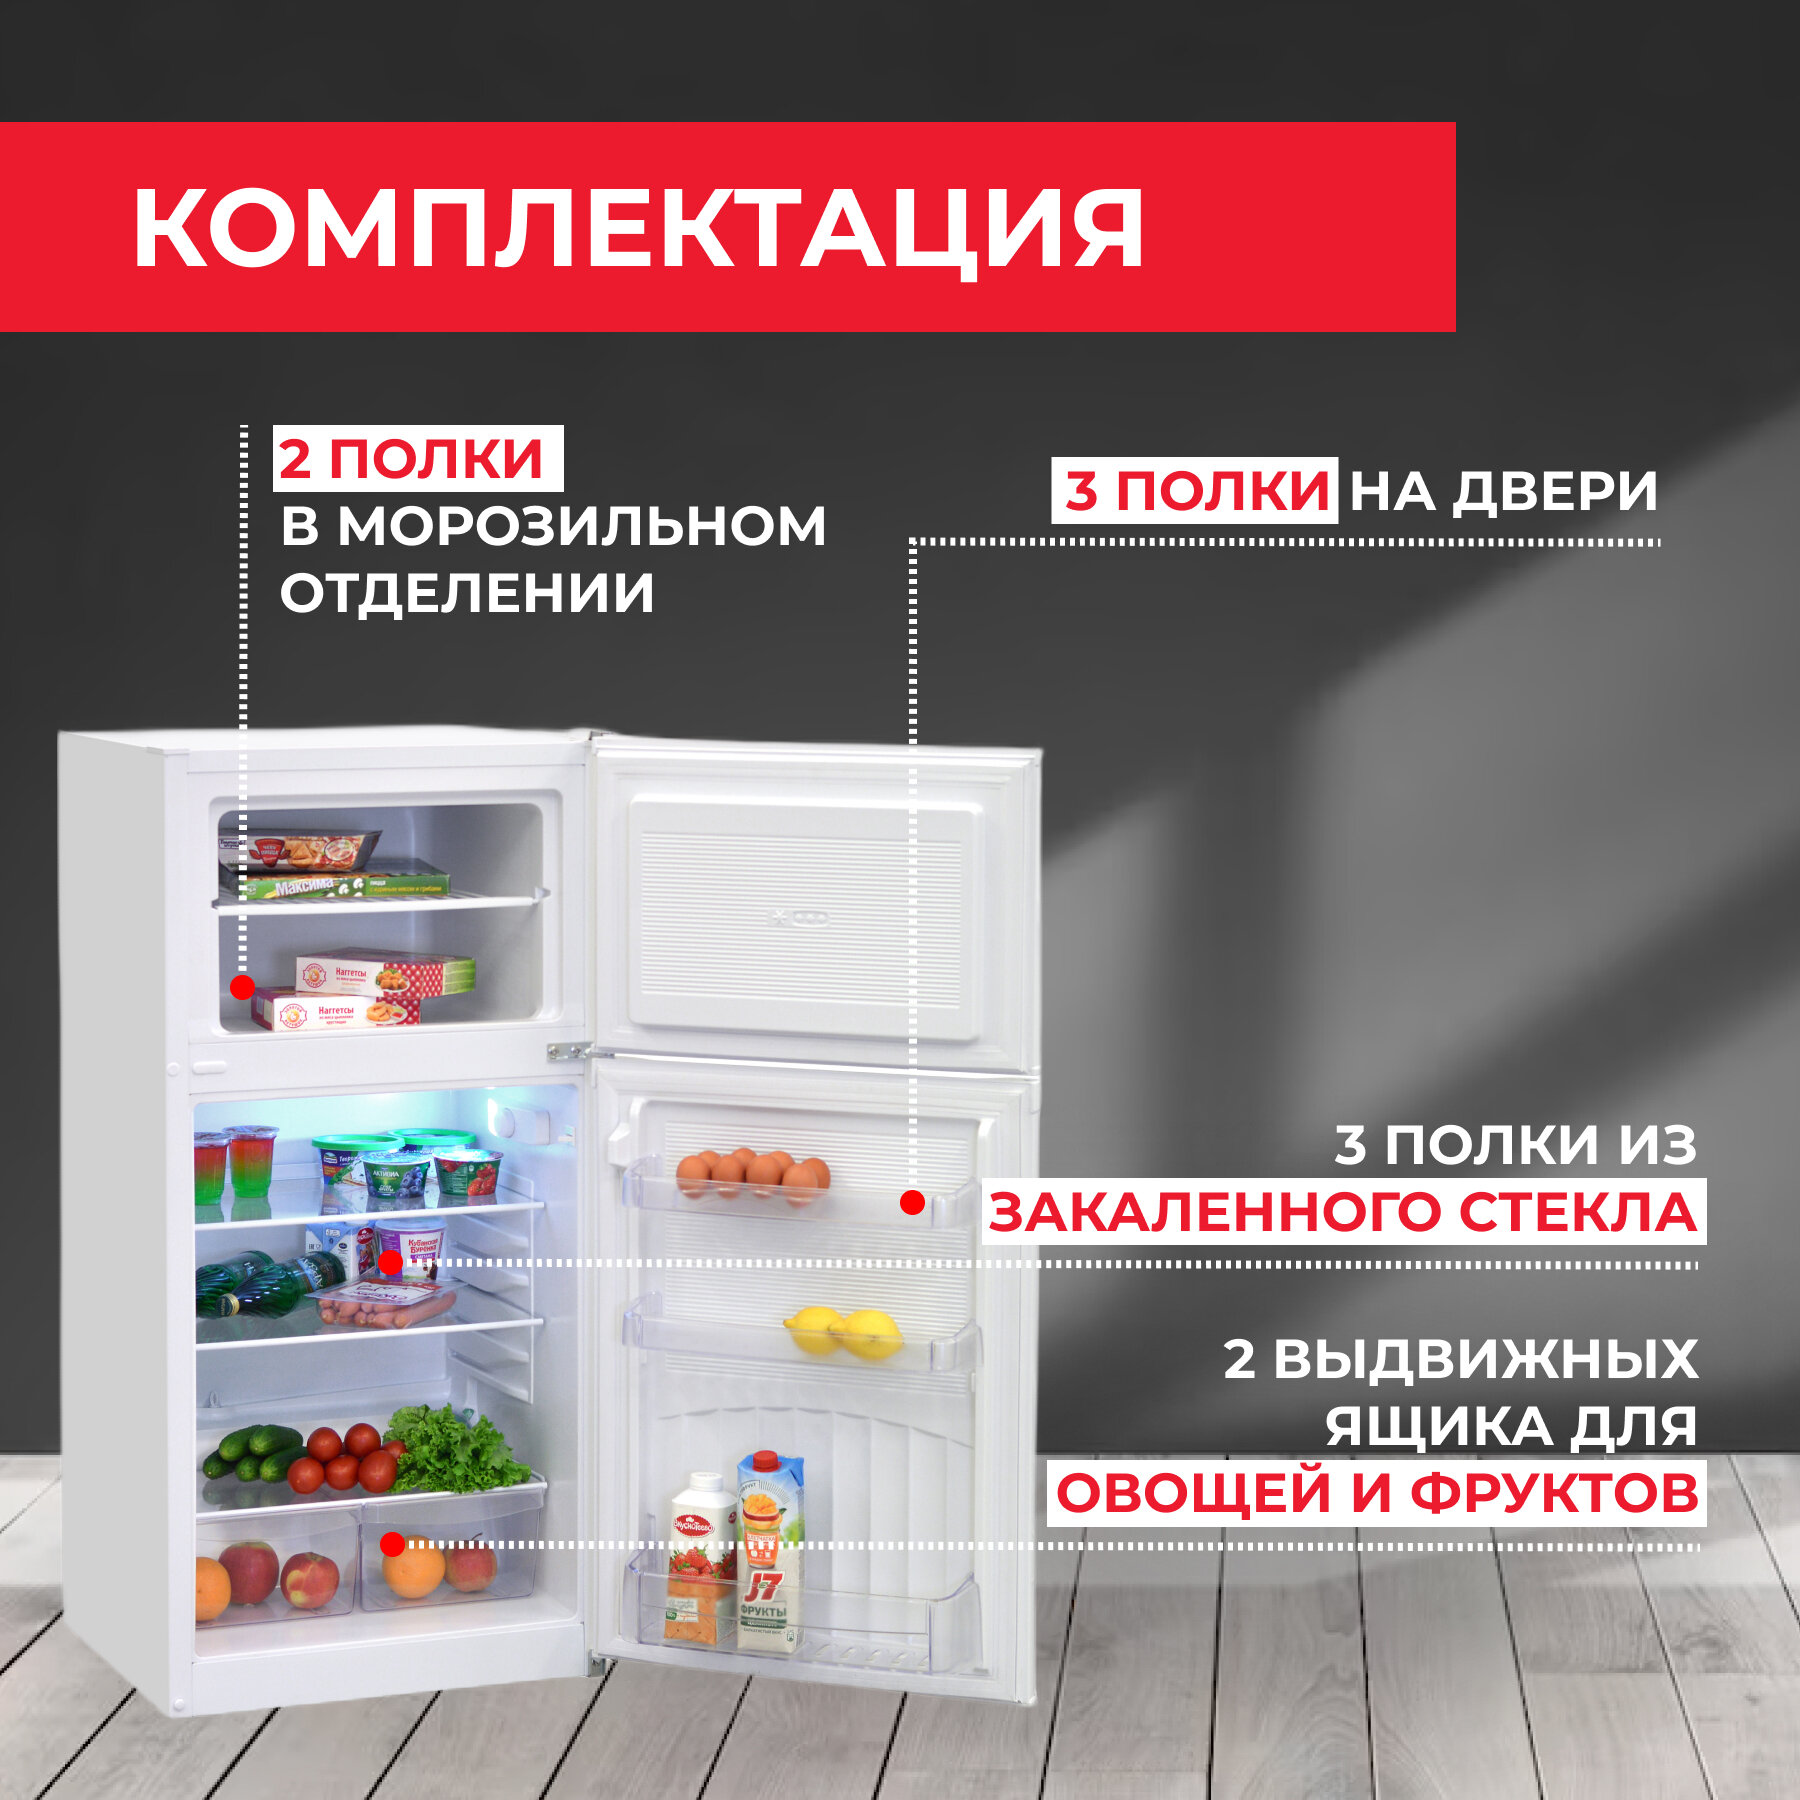 NEKO Холодильник NEKO ERT 243